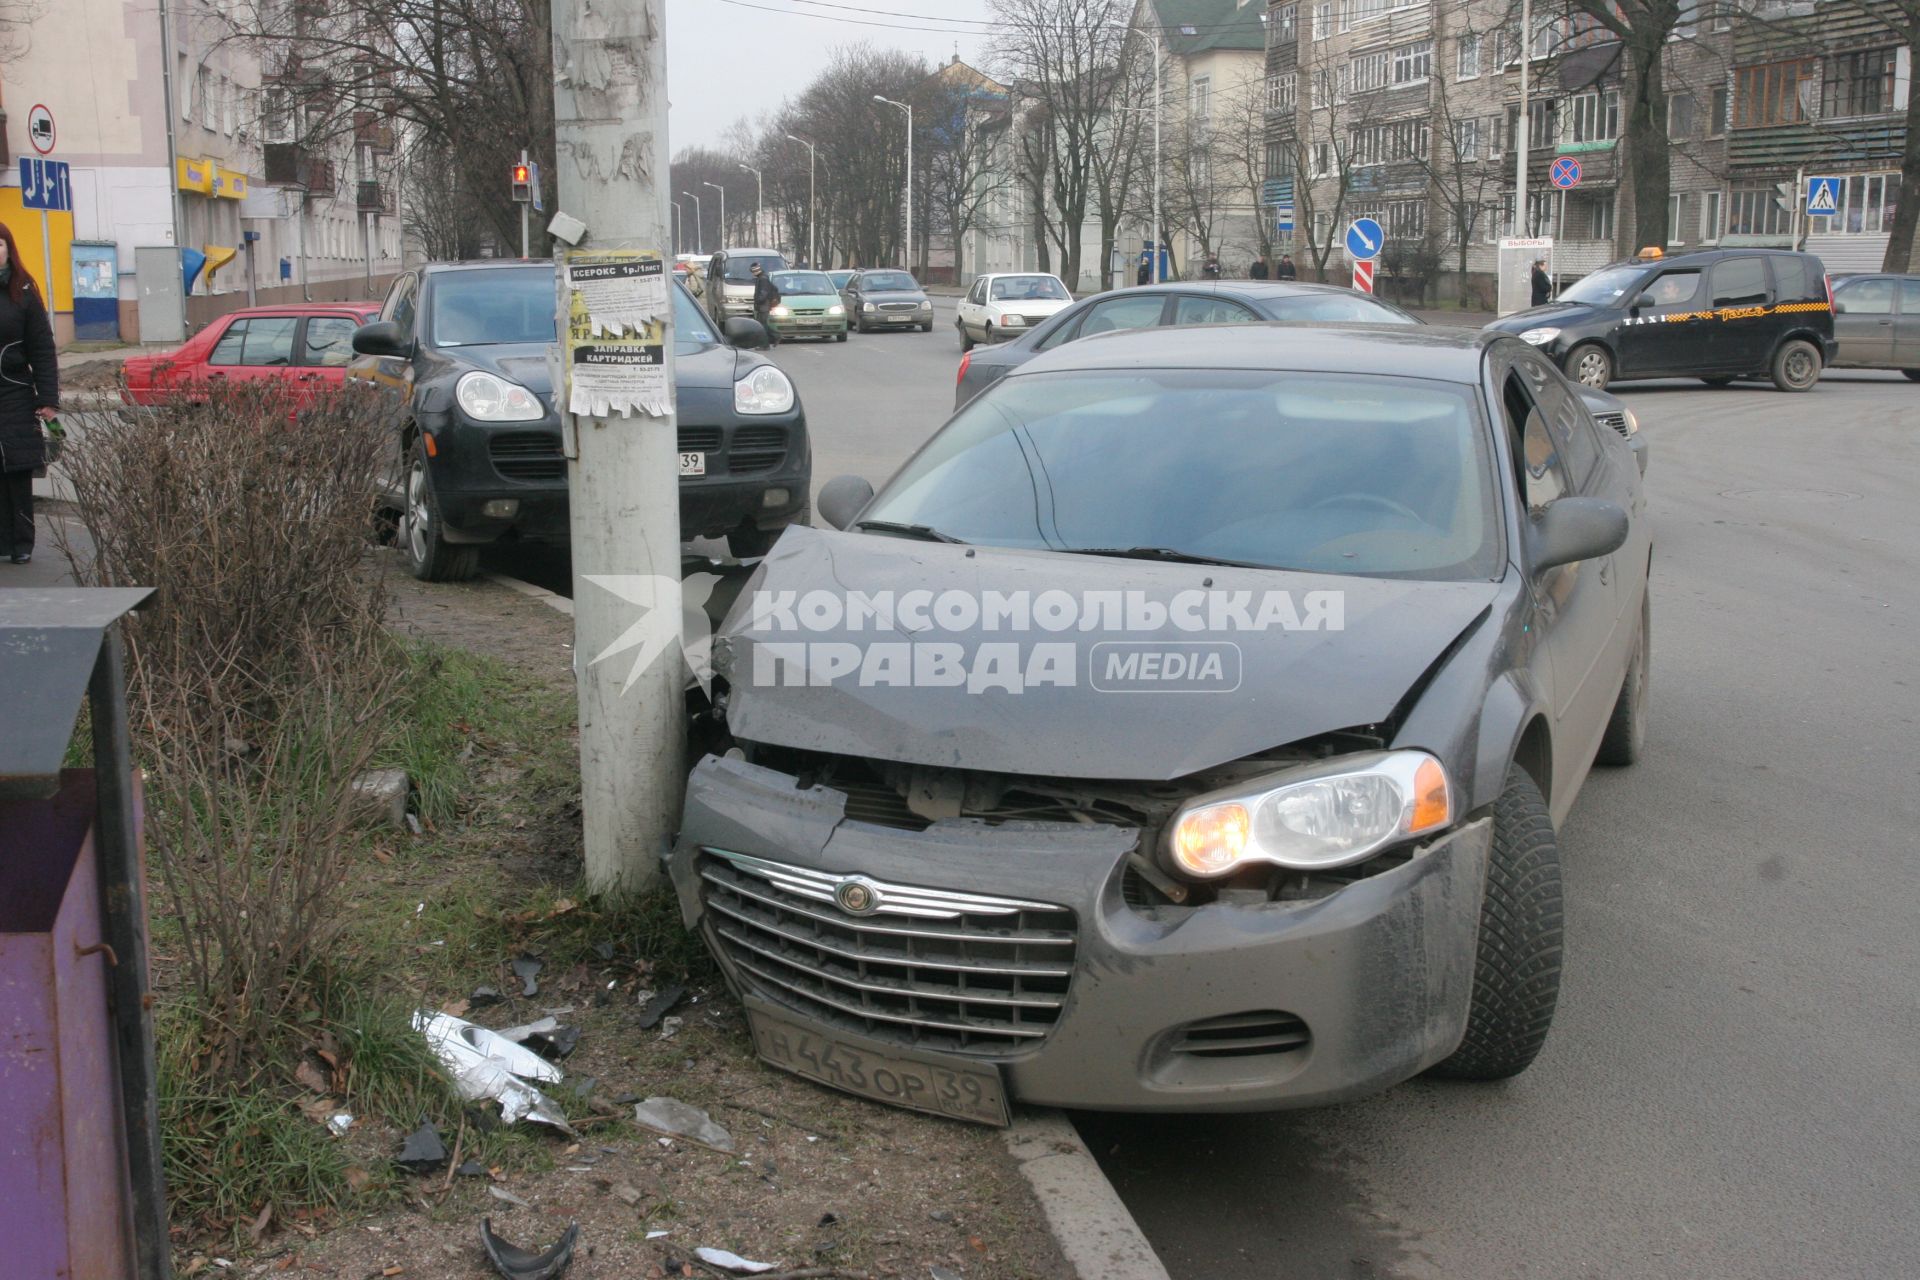 Калининград. Поврежденный в результате столкновения со столбом автомобиль.